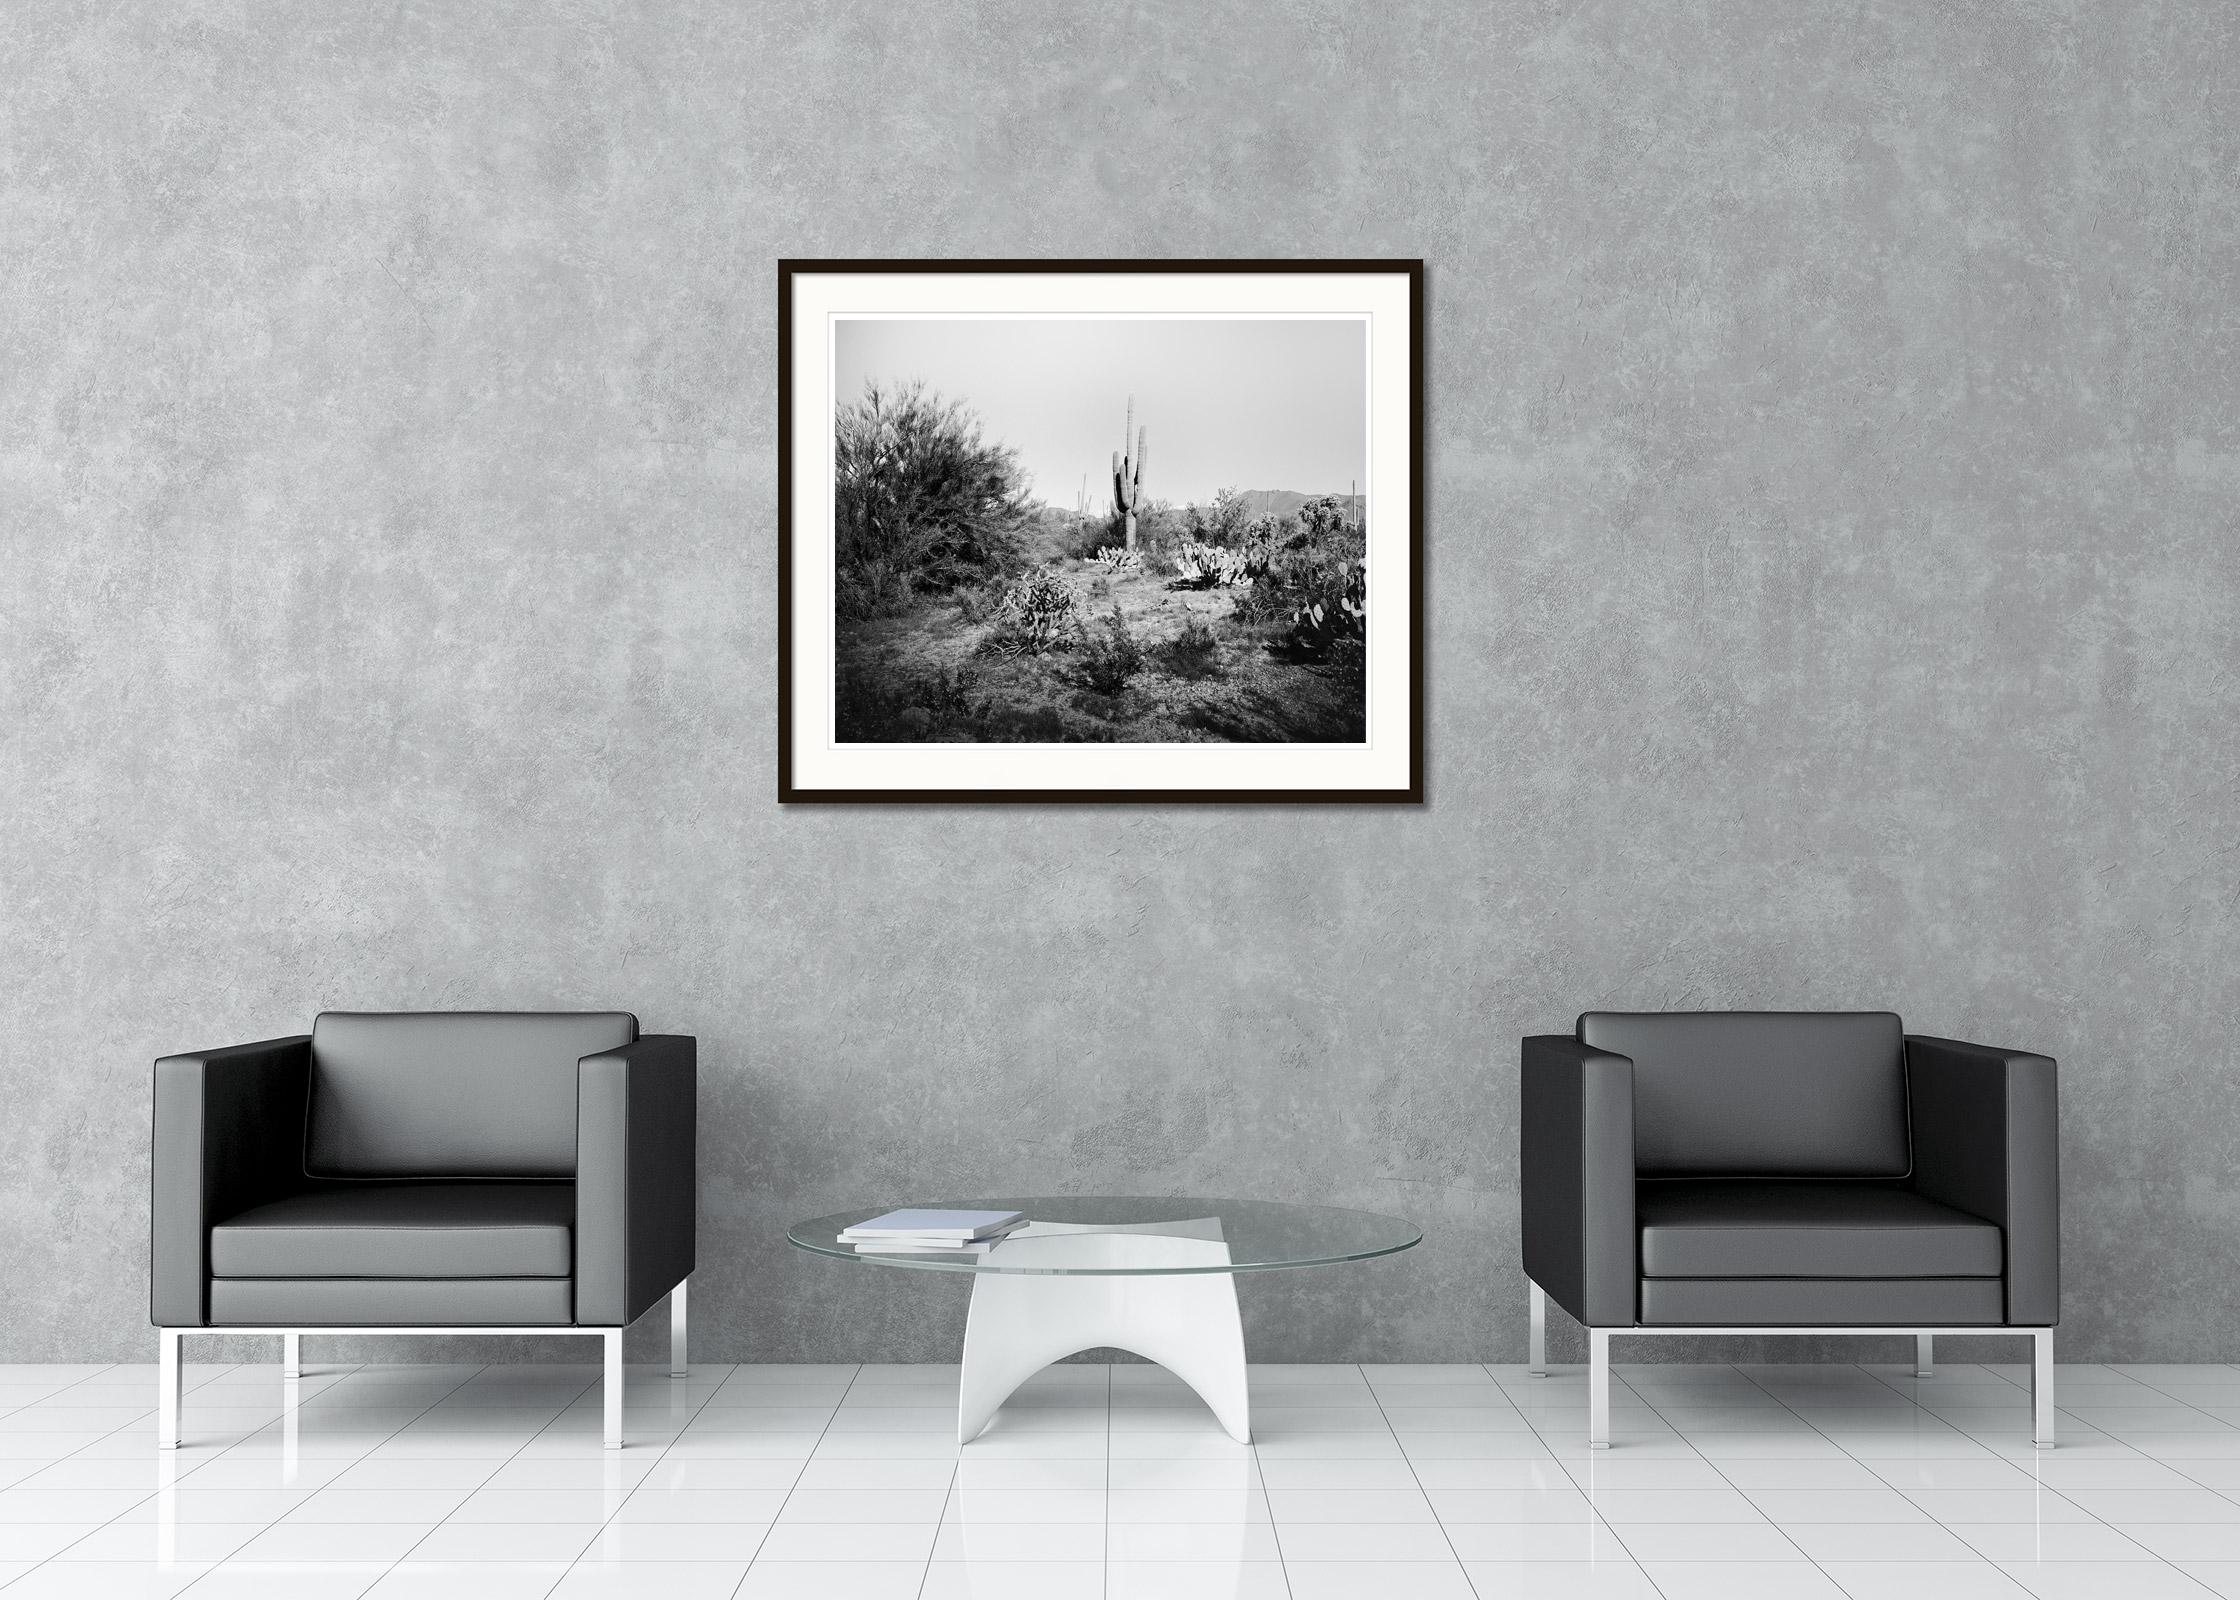 Schwarz-Weiß-Fotografie von Landschaften. Saguaro-Kaktus-Nationalpark, Wüste, Arizona, USA. Pigmenttintendruck, Auflage 9, signiert, betitelt, datiert und nummeriert vom Künstler. Mit Echtheitszertifikat. Bedruckt mit einem 4 cm breiten weißen